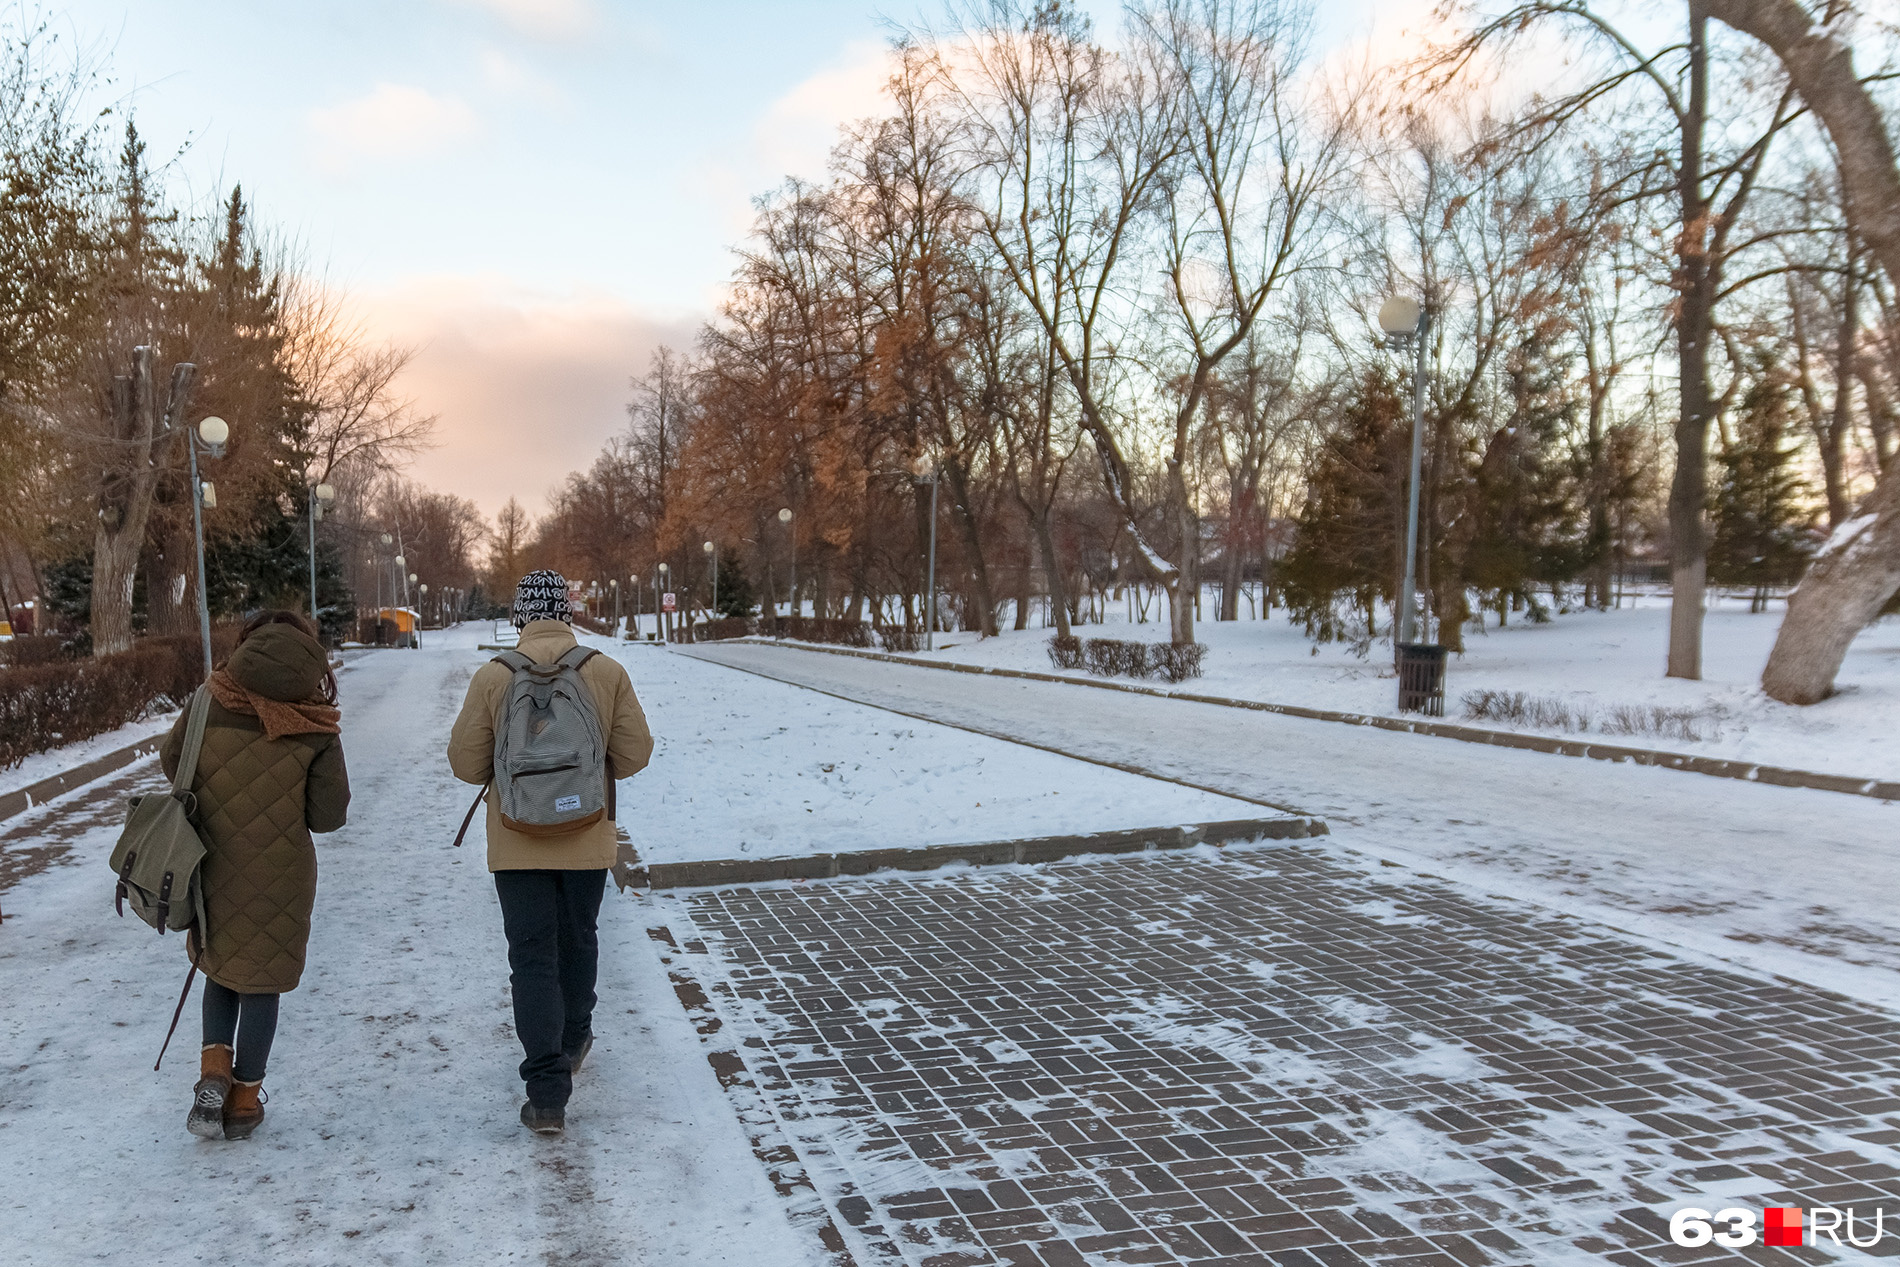 Самарцы любят гулять по парку и зимой, и летом